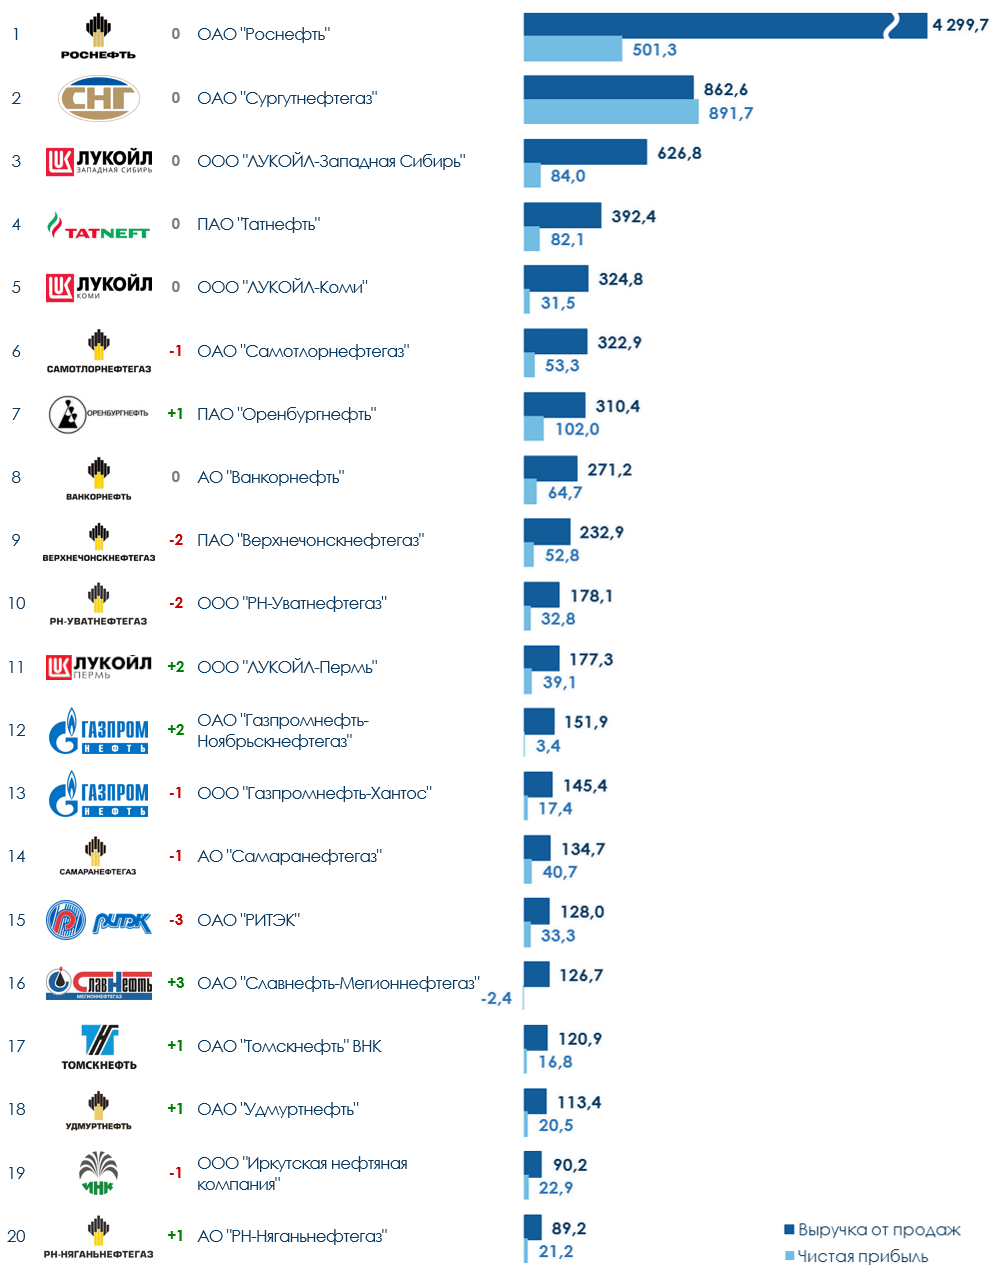 ТОП-20 компаний нефтедобывающей отрасли России